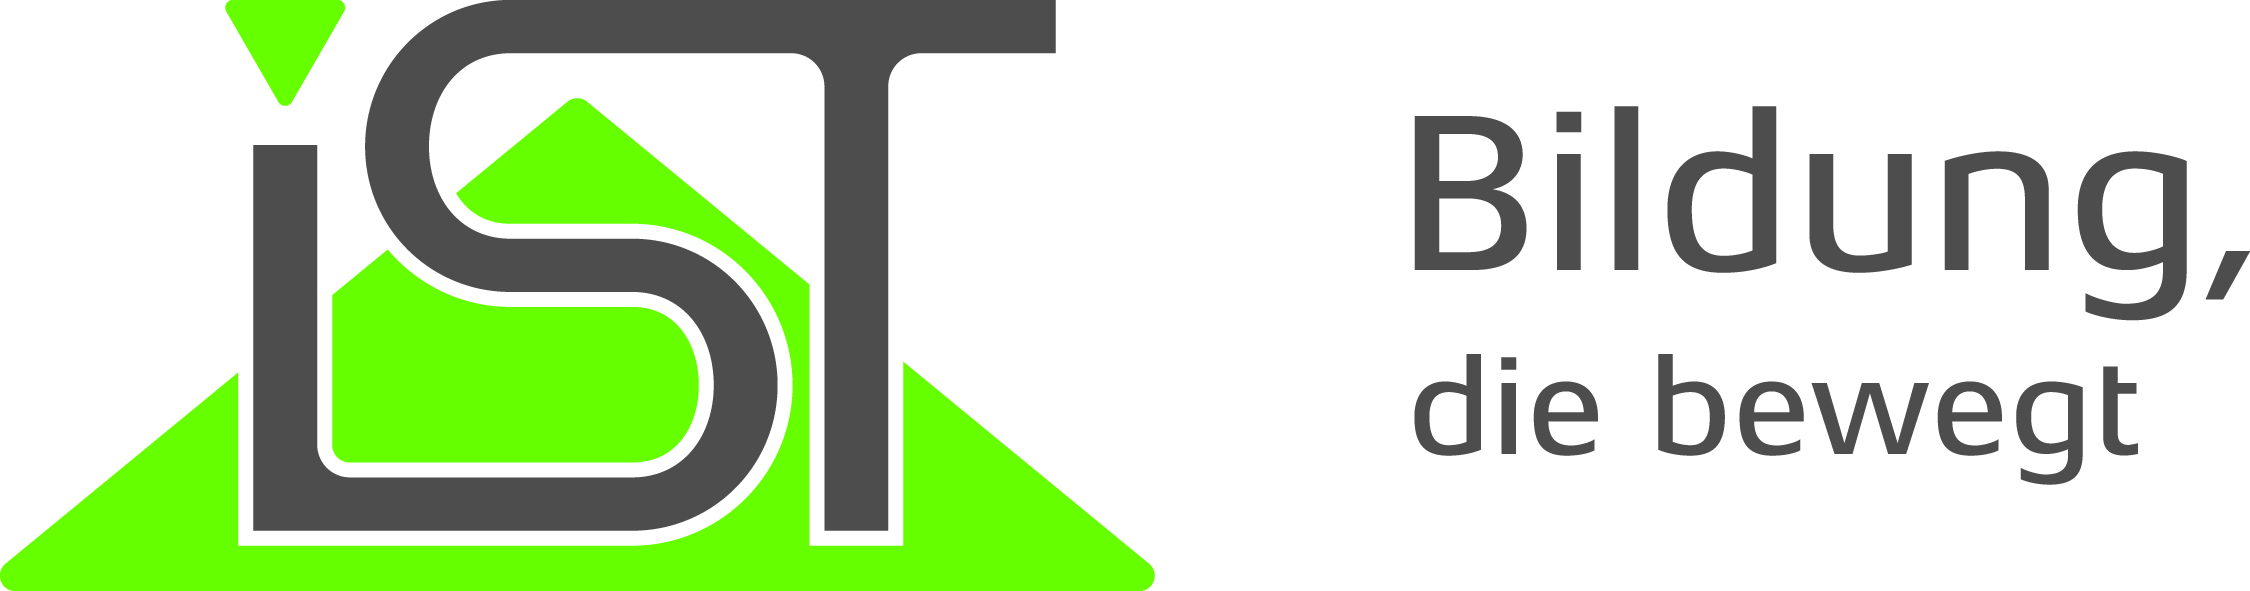 IST-Hochschule für Management Logo